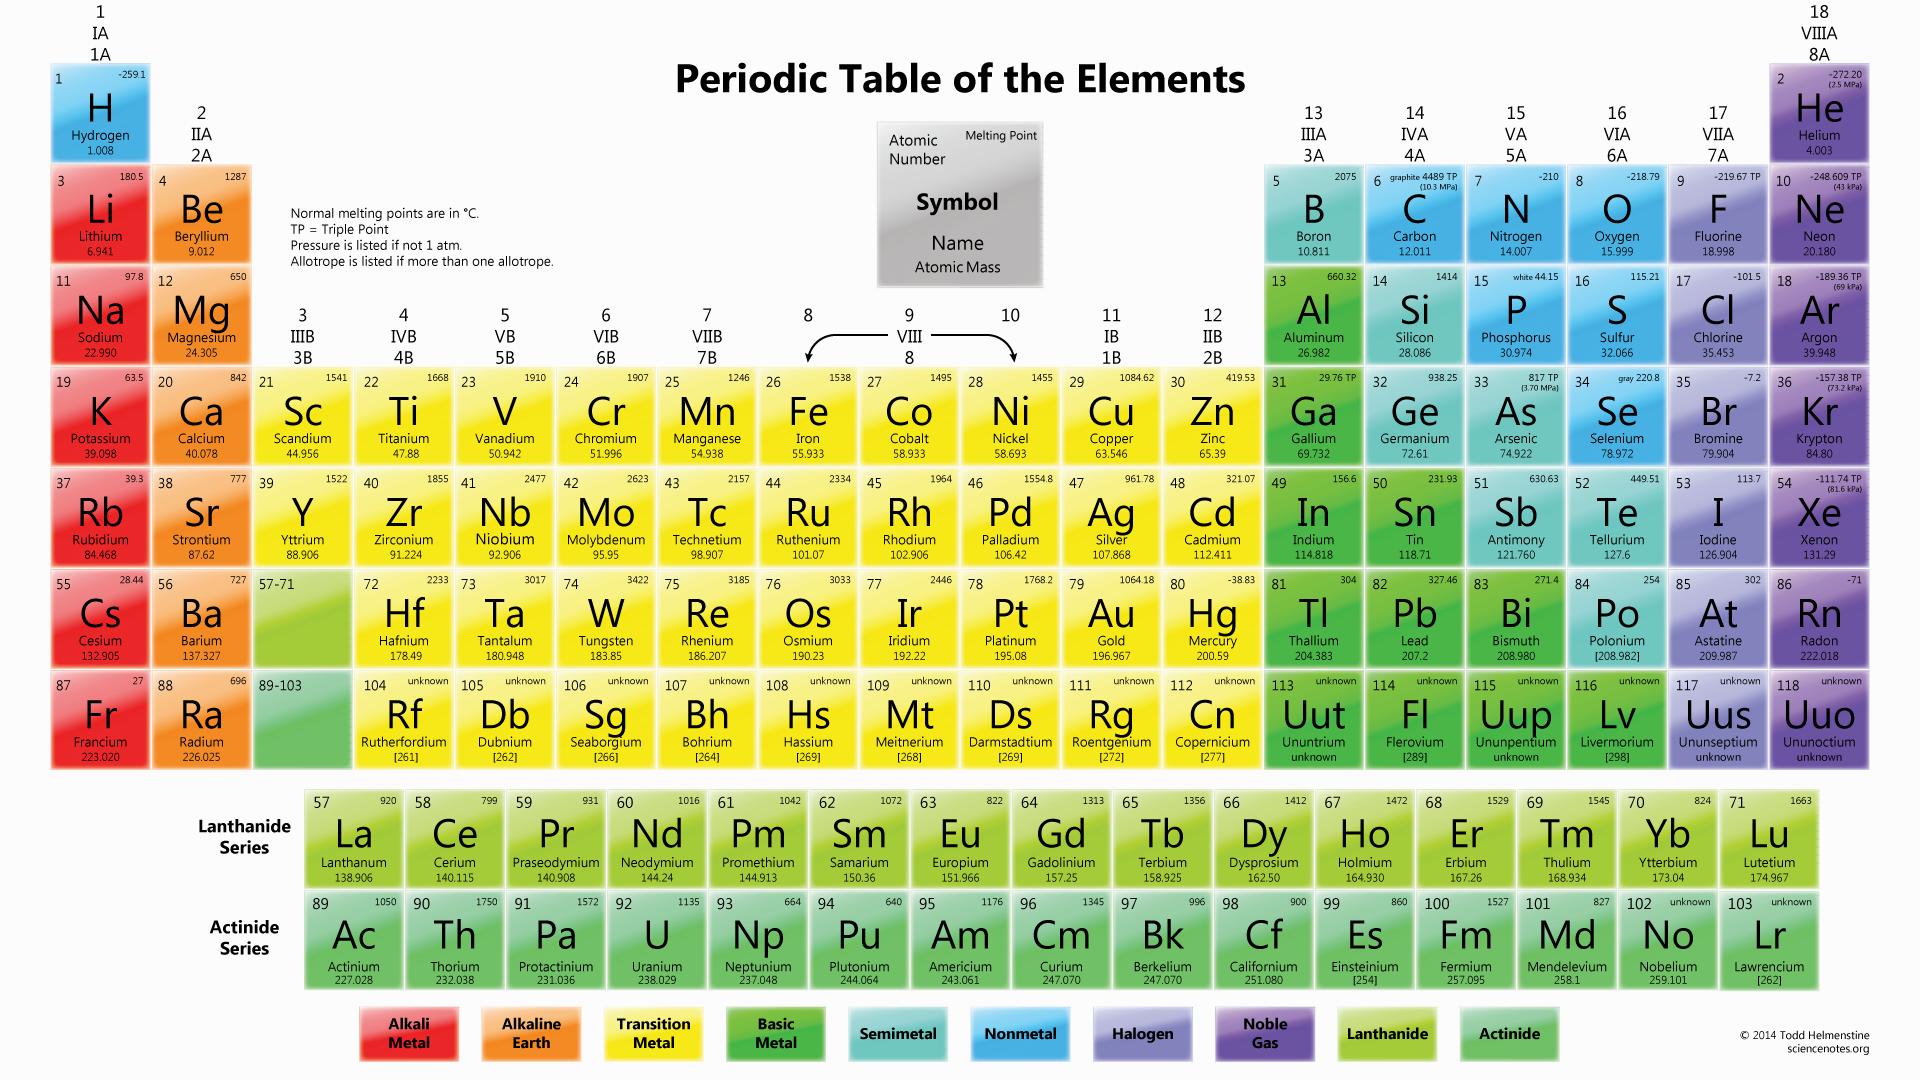 Introduzione alla tavola periodica degli elementi | Scienza Facile